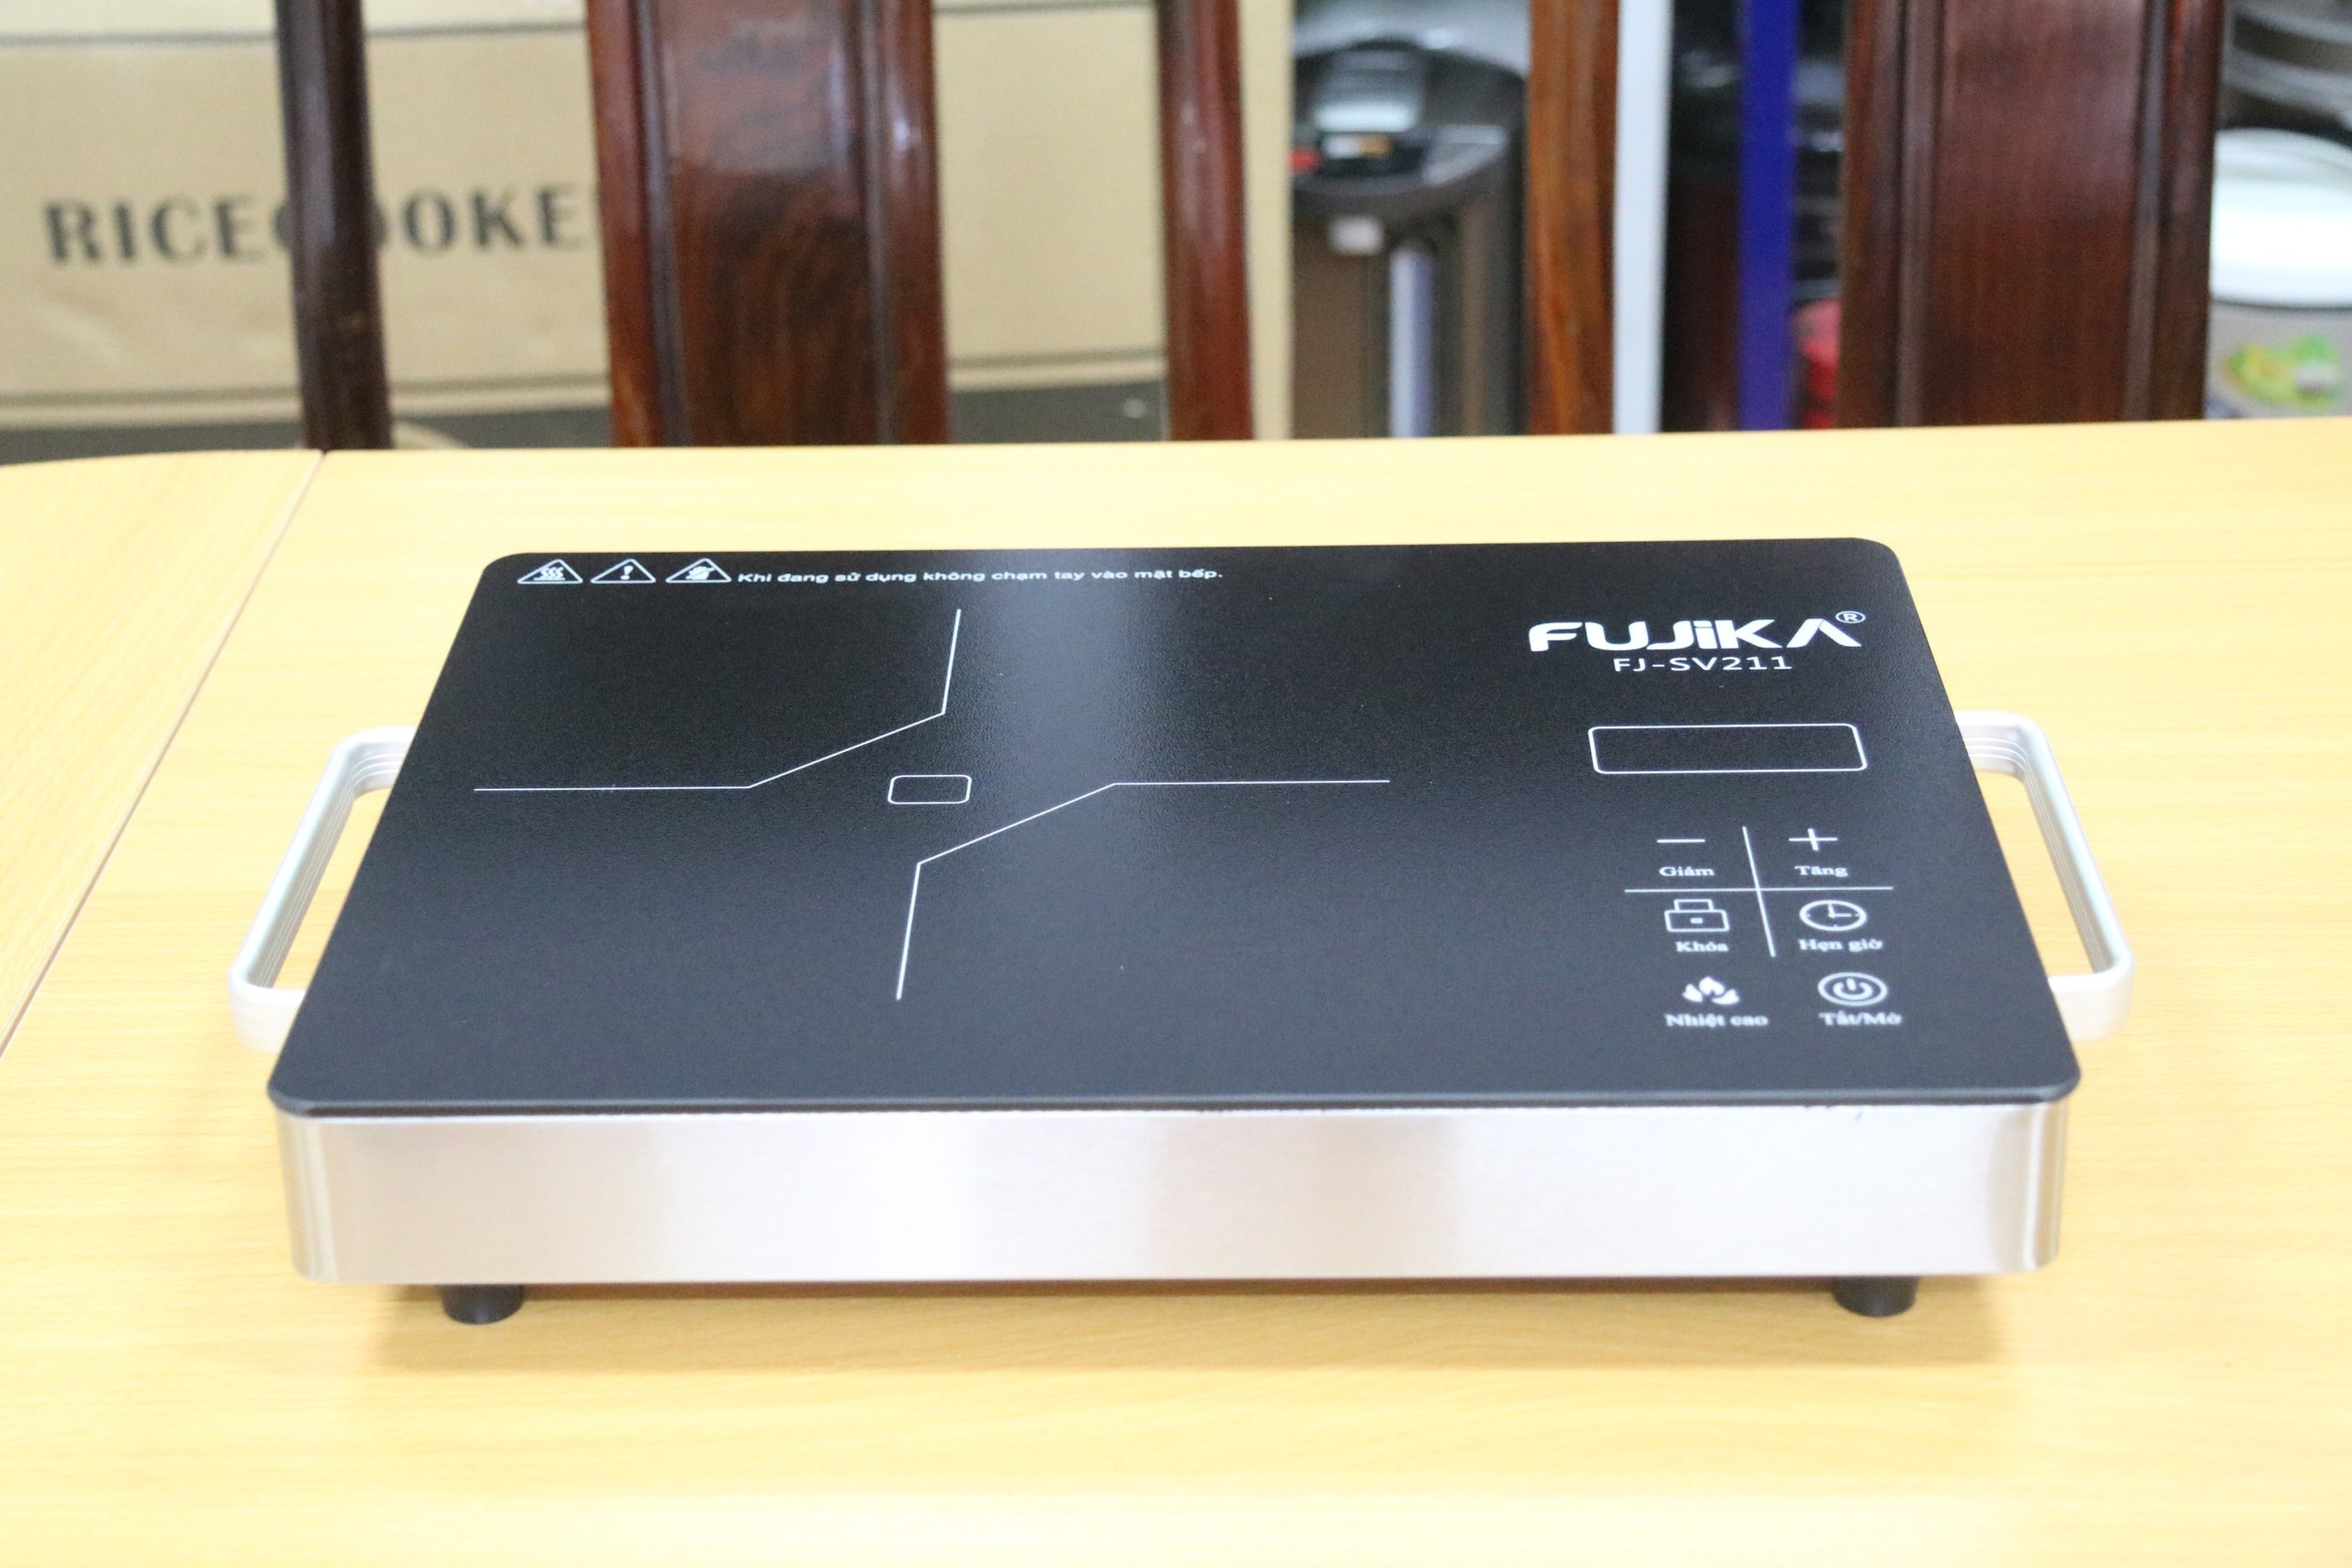 [Không kén nồi]Bếp hồng ngoại Fujika FJSC211/Ladomax Ha666 công suất 2000W-2200W mặt kiếng cường lực-Hàng chính hãng